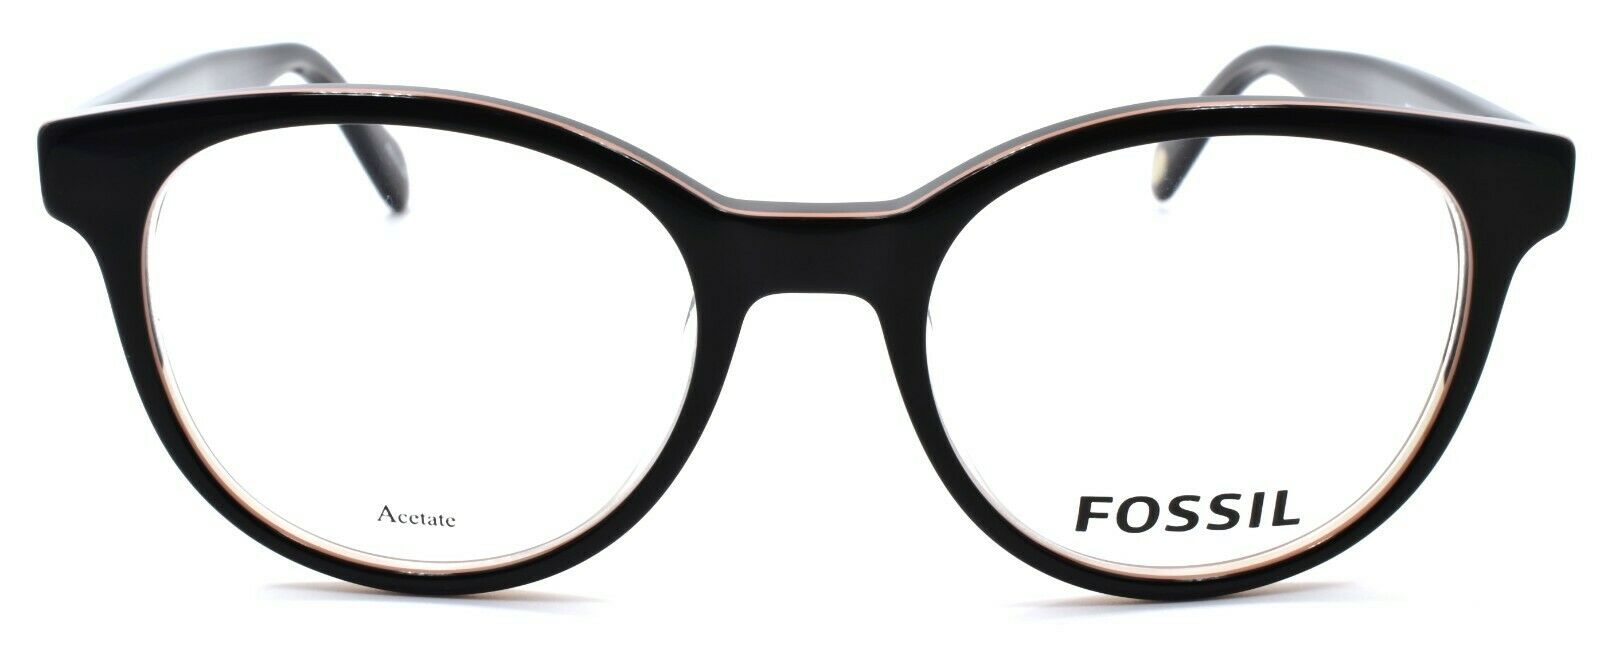 2-Fossil FOS 7012 807 Men's Eyeglasses Frames Round 50-19-145 Black-762753342577-IKSpecs